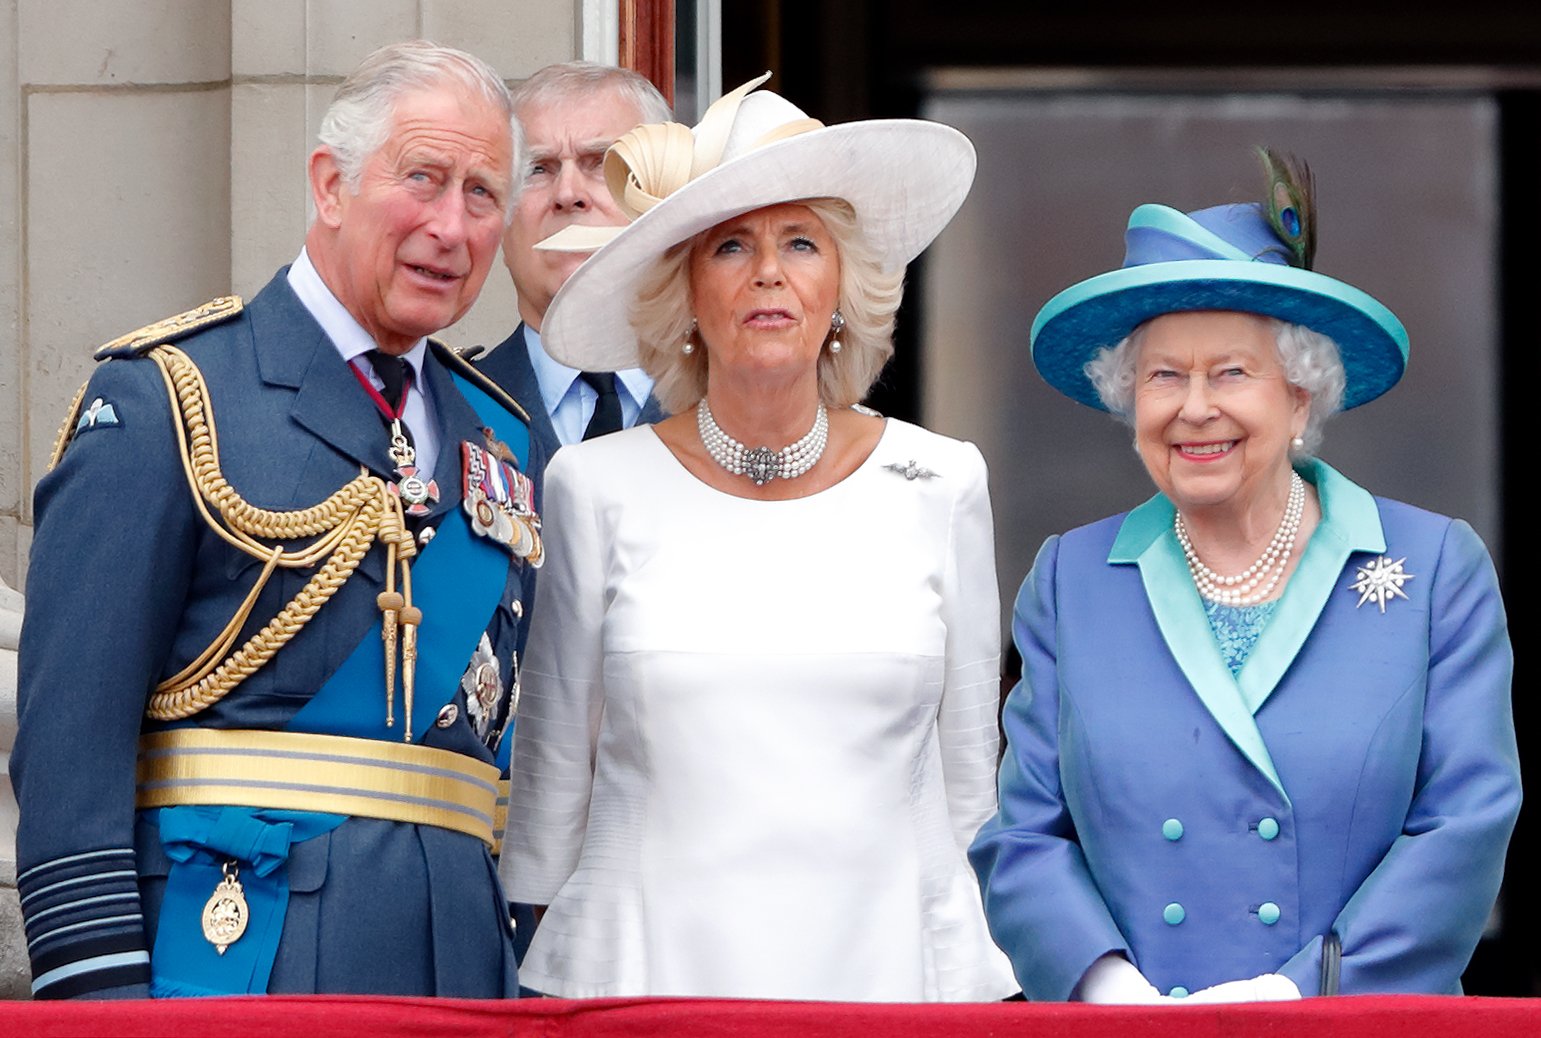 König Charles lll., Queen Consort Camilla Parker-Bowles und Queen Elizabeth II. sehen sich am 10. Juli 2018 vom Balkon des Buckingham Palasts in London, England, einen Vorbeiflug anlässlich des hundertjährigen Bestehens der Royal Air Force an. | Quelle: Getty Images